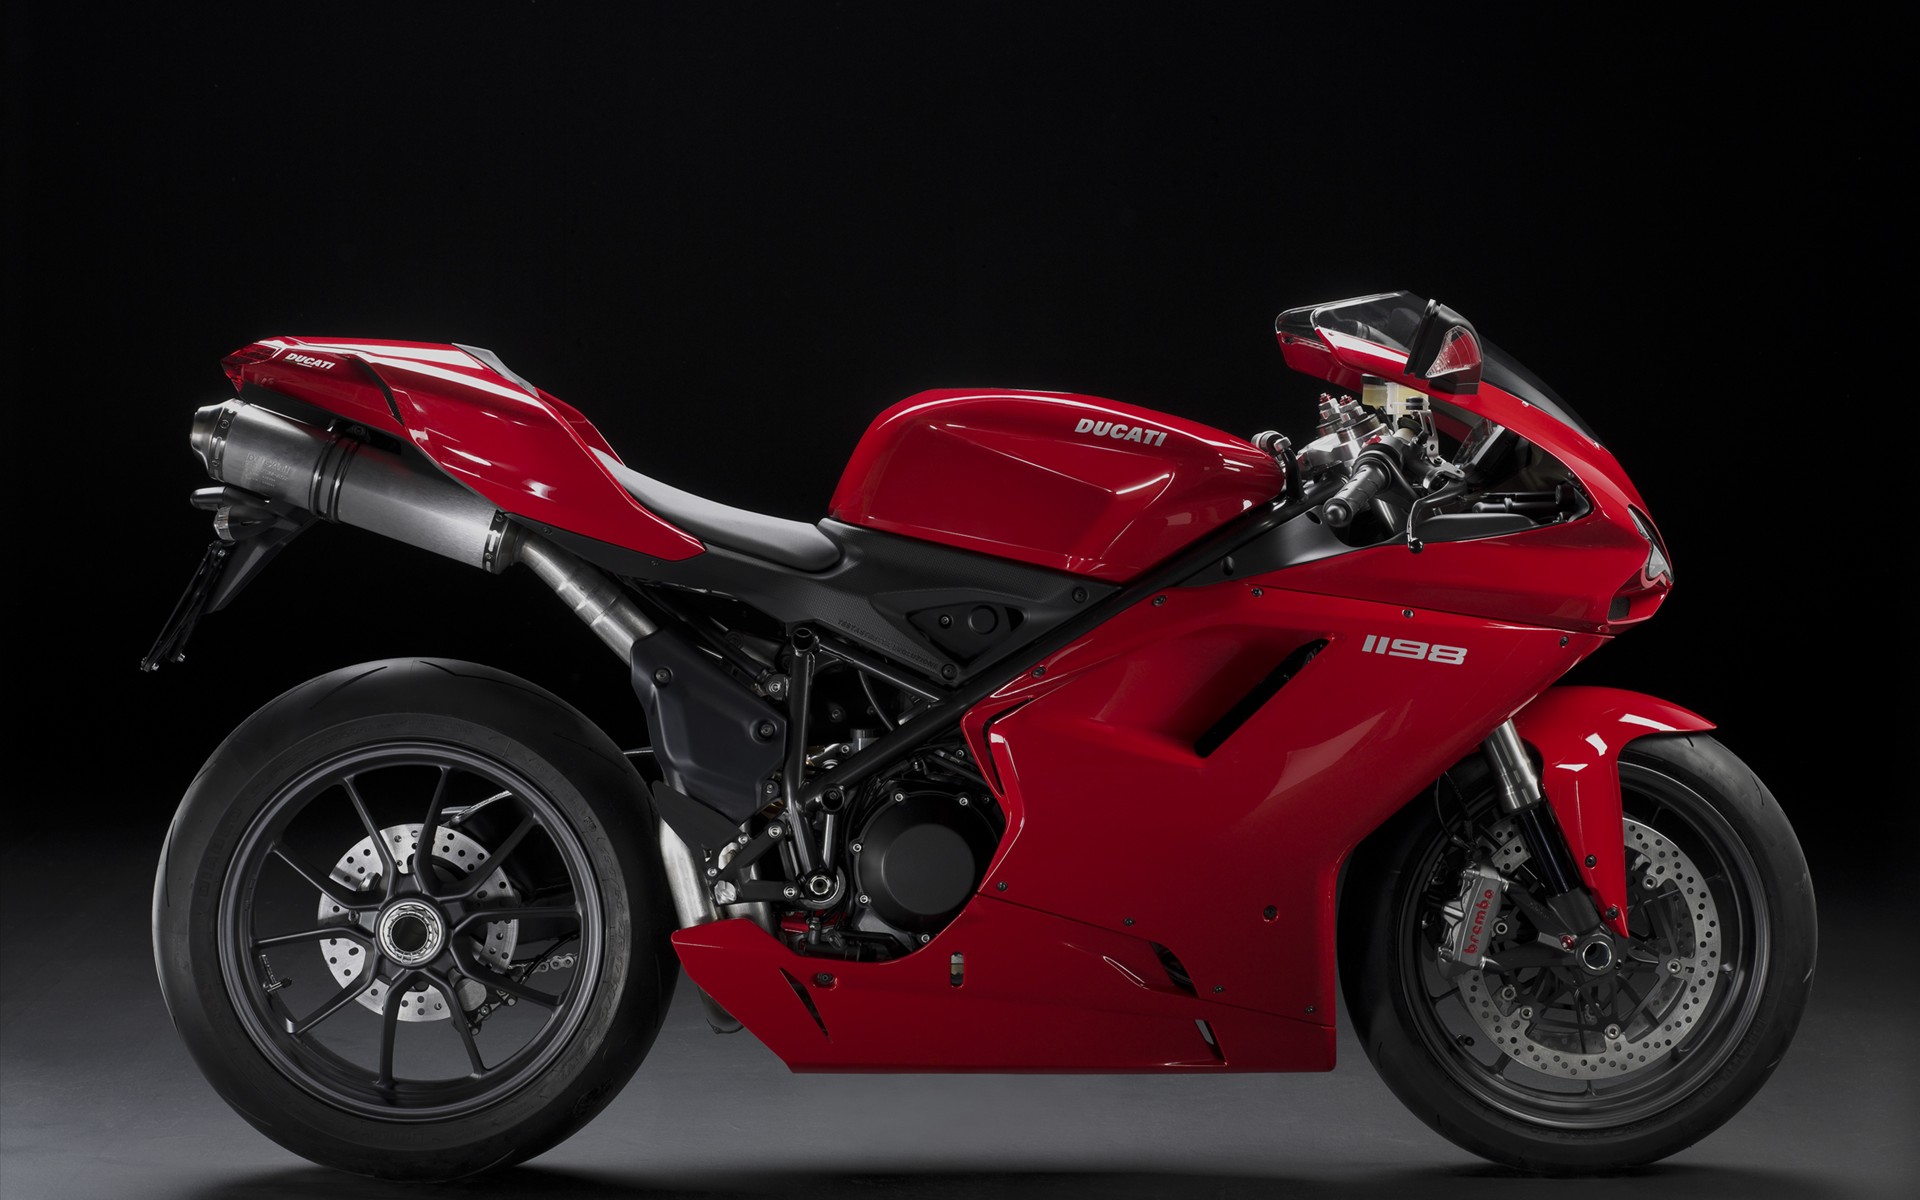 Ducati 1198 Super Bike148269752 - Ducati 1198 Super Bike - Super, Motorrad, Ducati, Bike, 1198